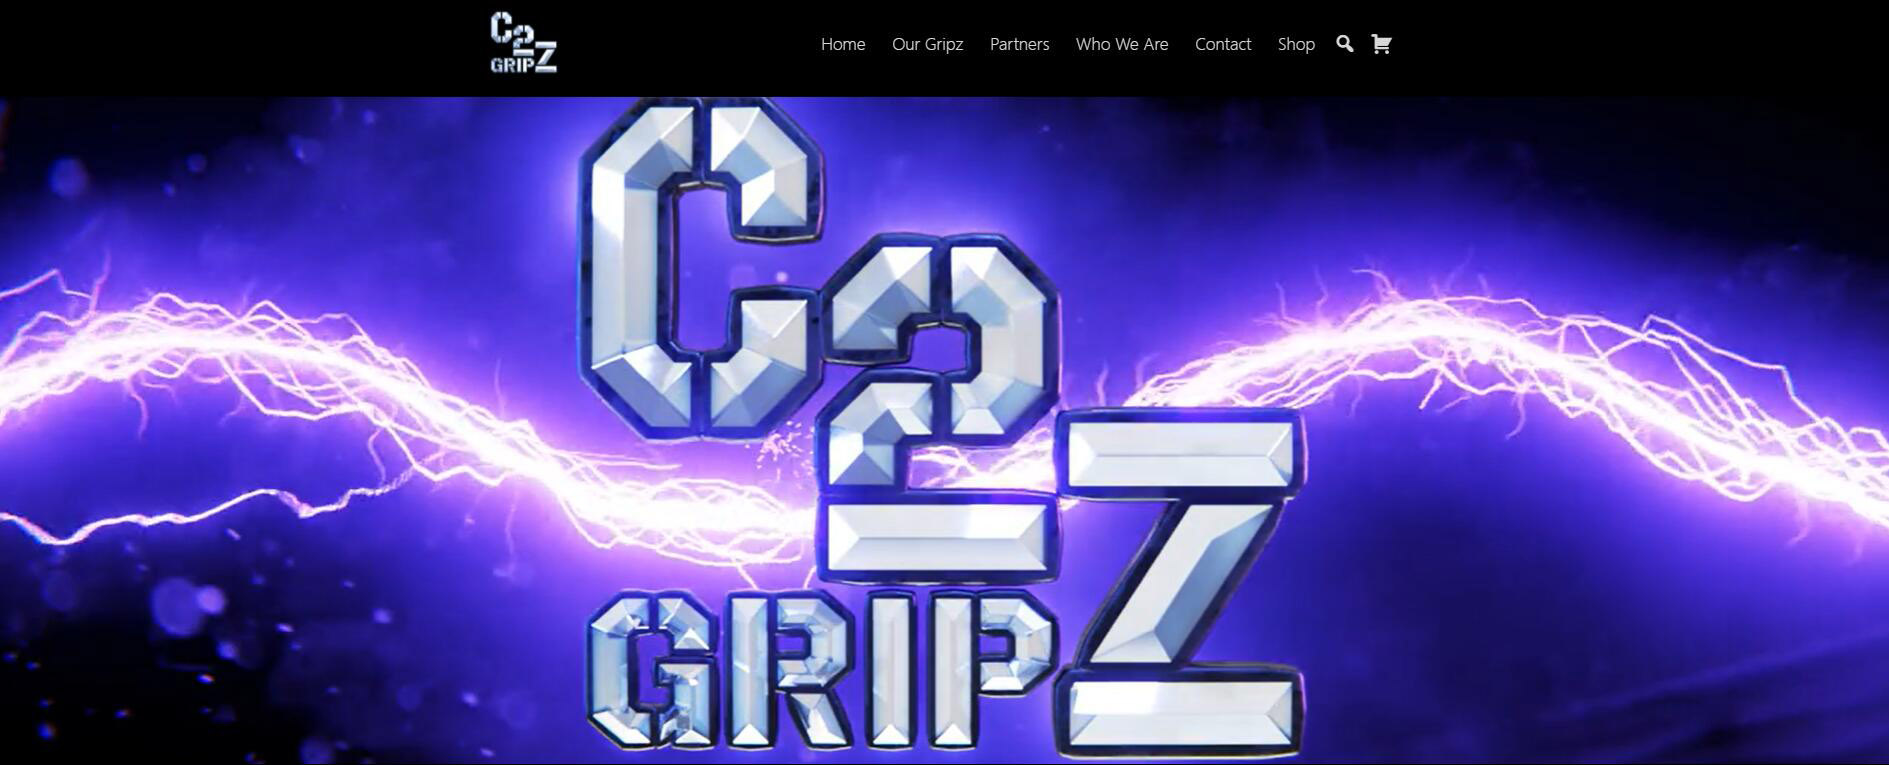 C2 Gripz Affiliate Program